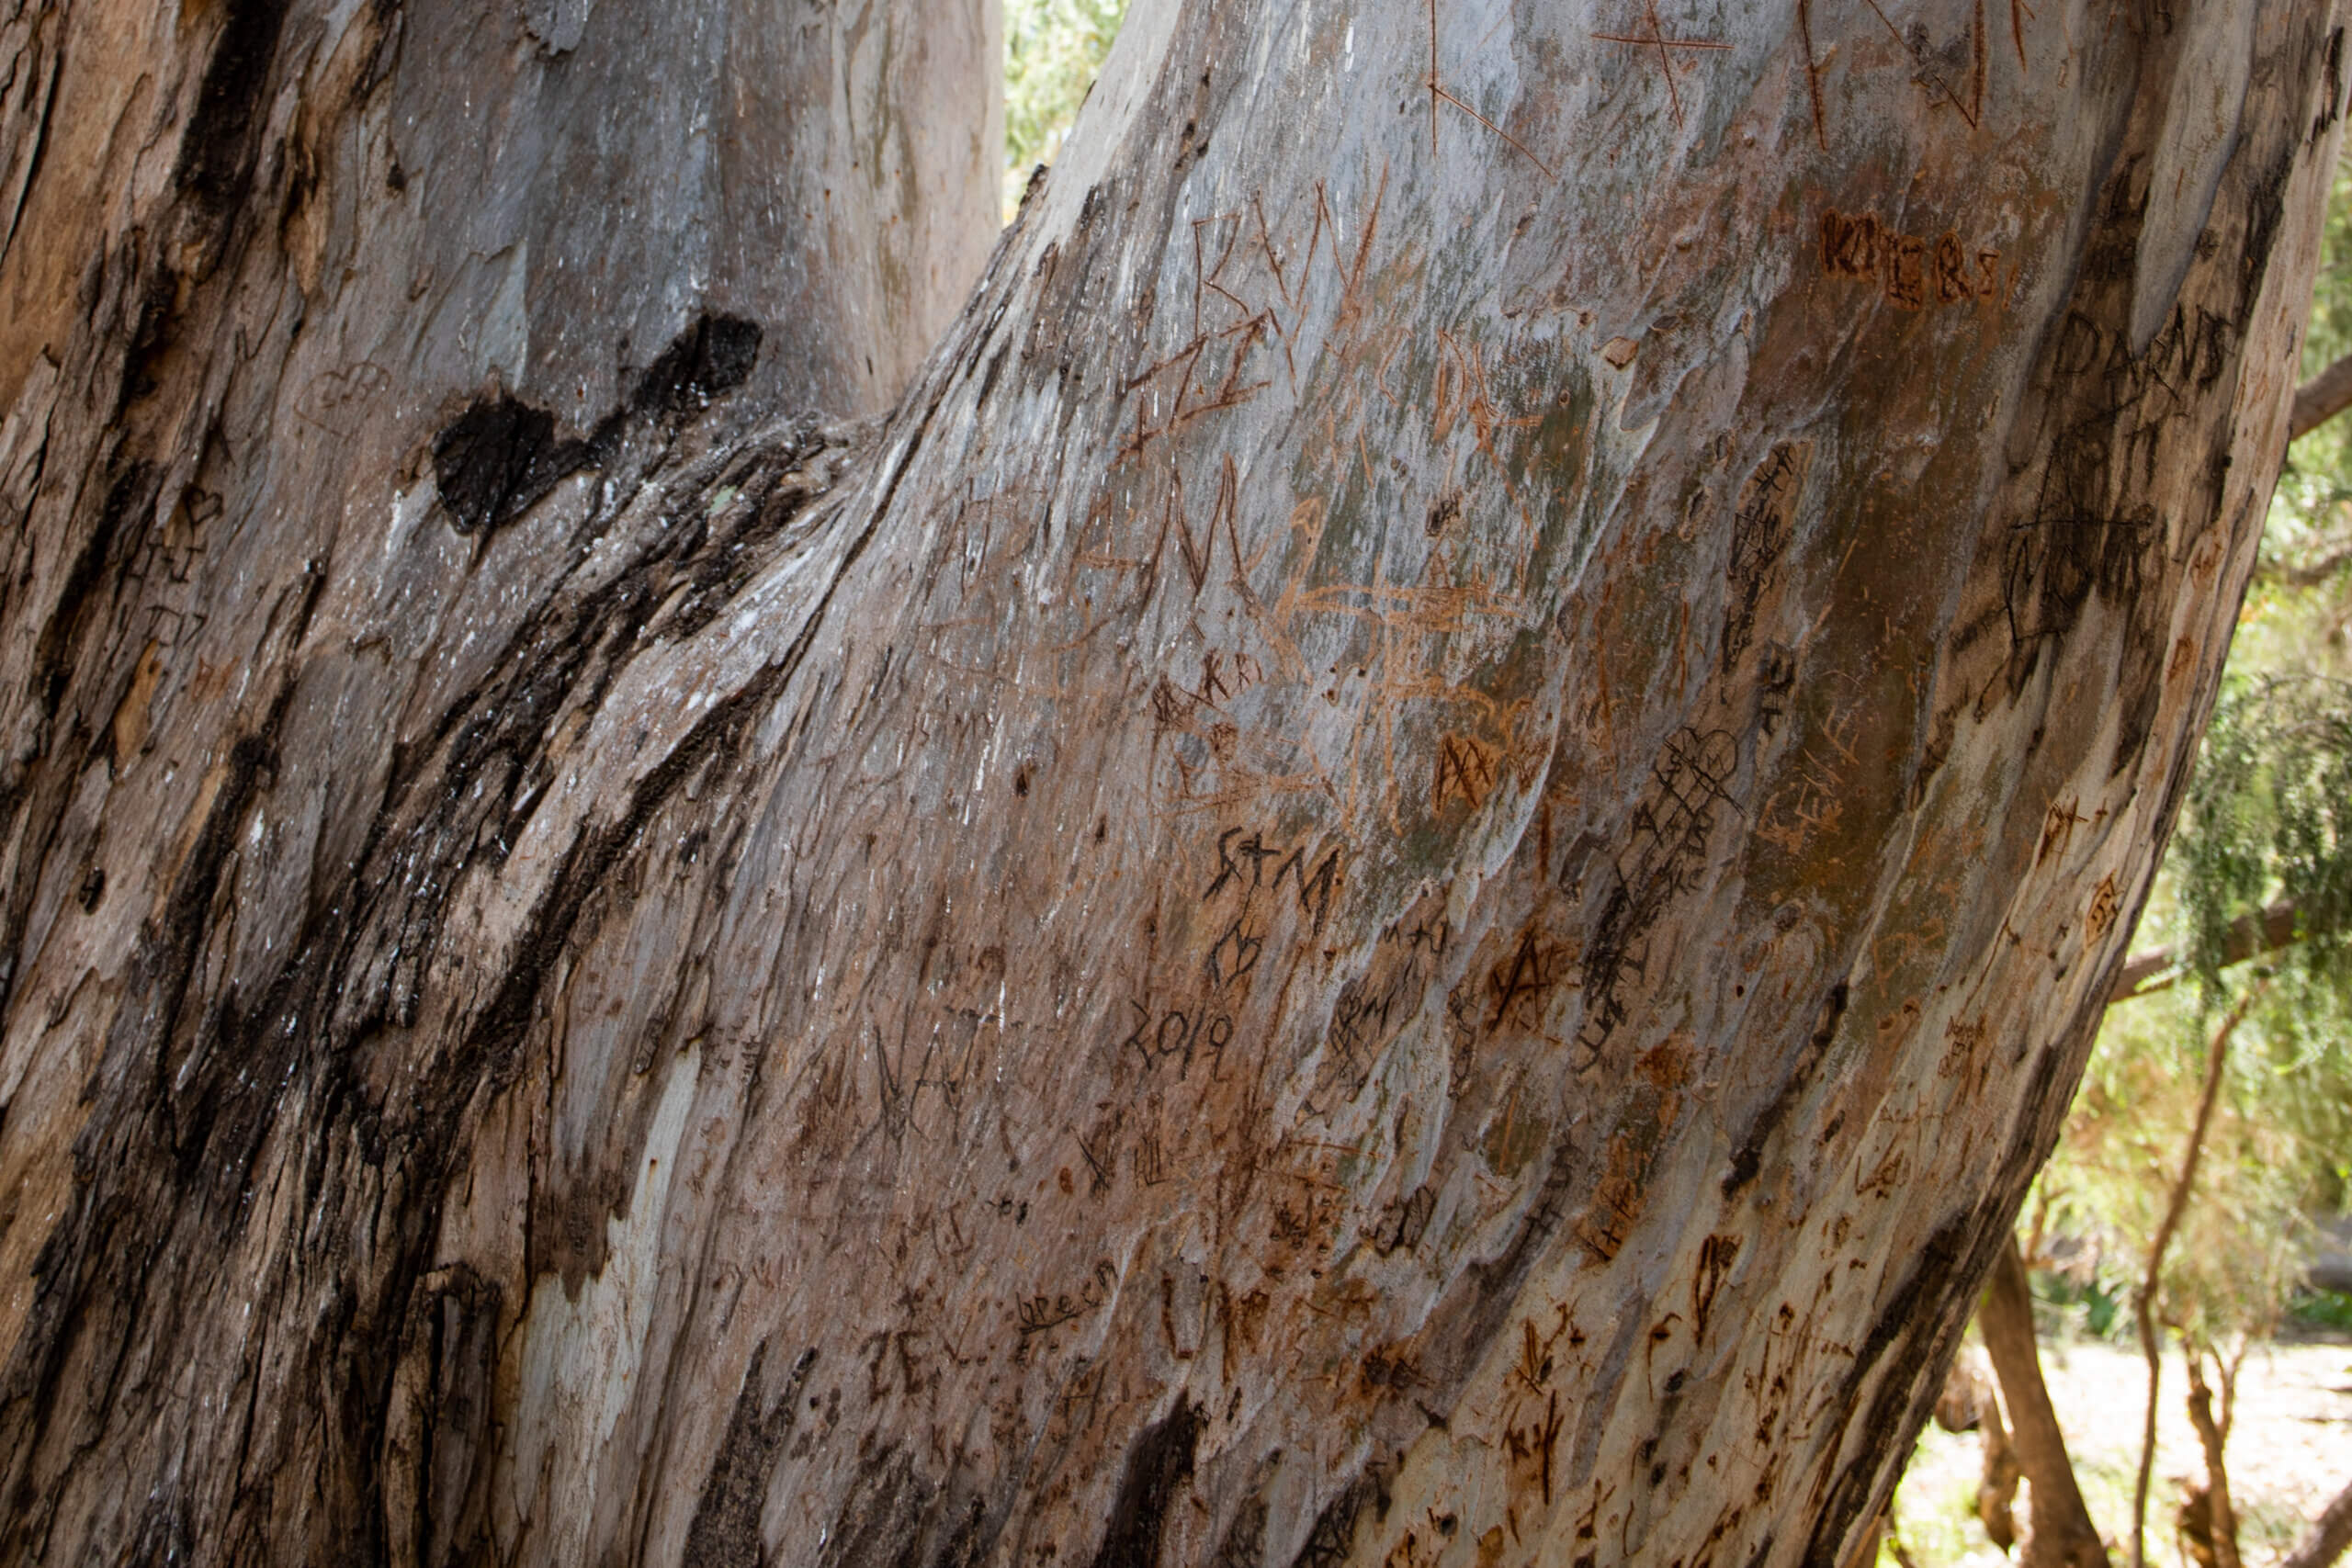 Tree Carvings on Mr Big, a larg eucalyptus tree